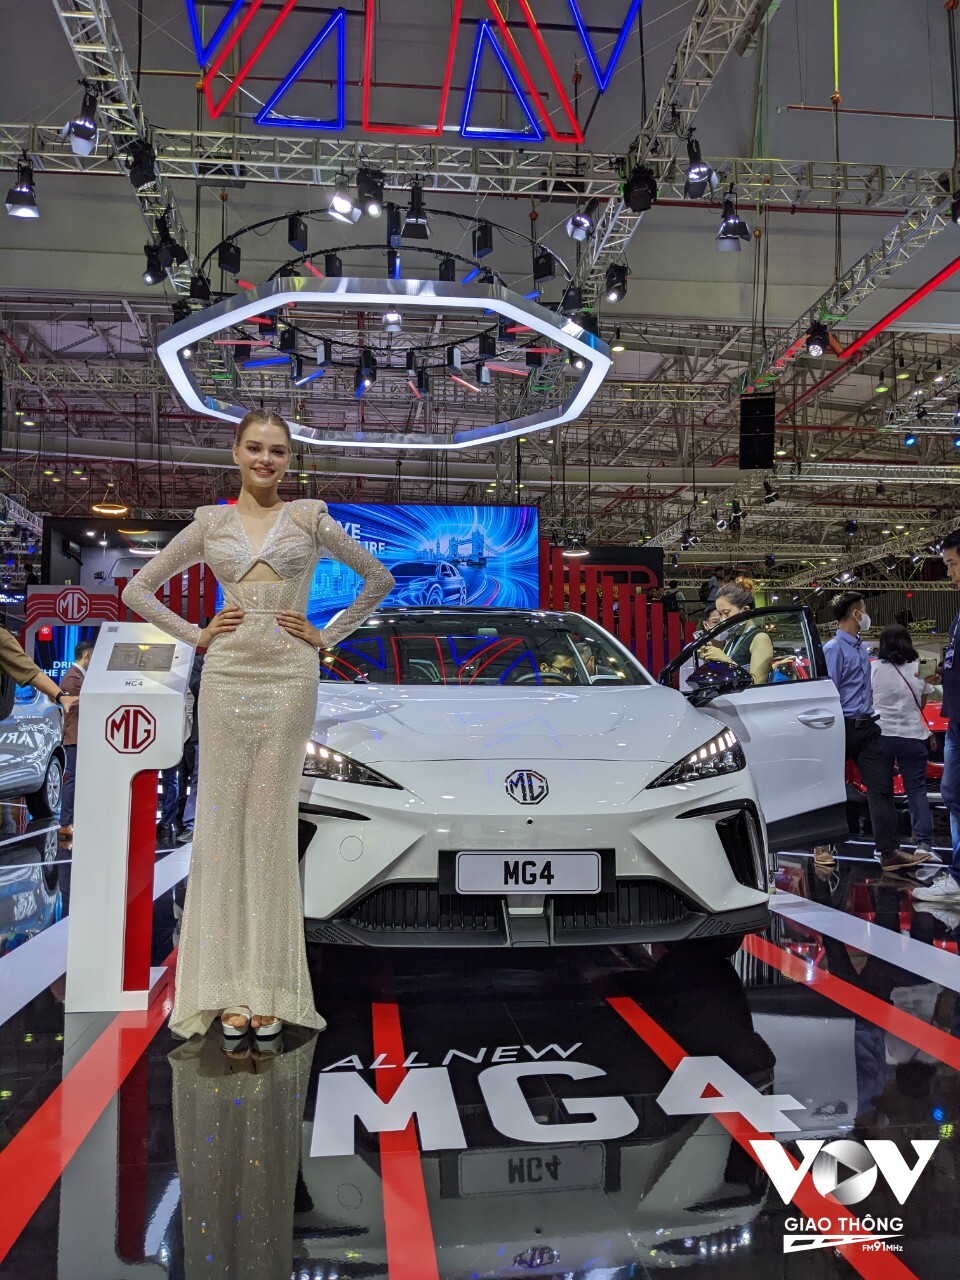 Một mẫu xe thuần điện khác là MG4 cũng được giới thiệu tại Vietnam Motor Show 2022, dù chưa công bố giá bán song dự kiến mẫu xe này sẽ có giá rất cạnh tranh. Ngoài ra MG cũng trình làng thêm 1 mẫu xe điện khác mang tên MG Marvel R